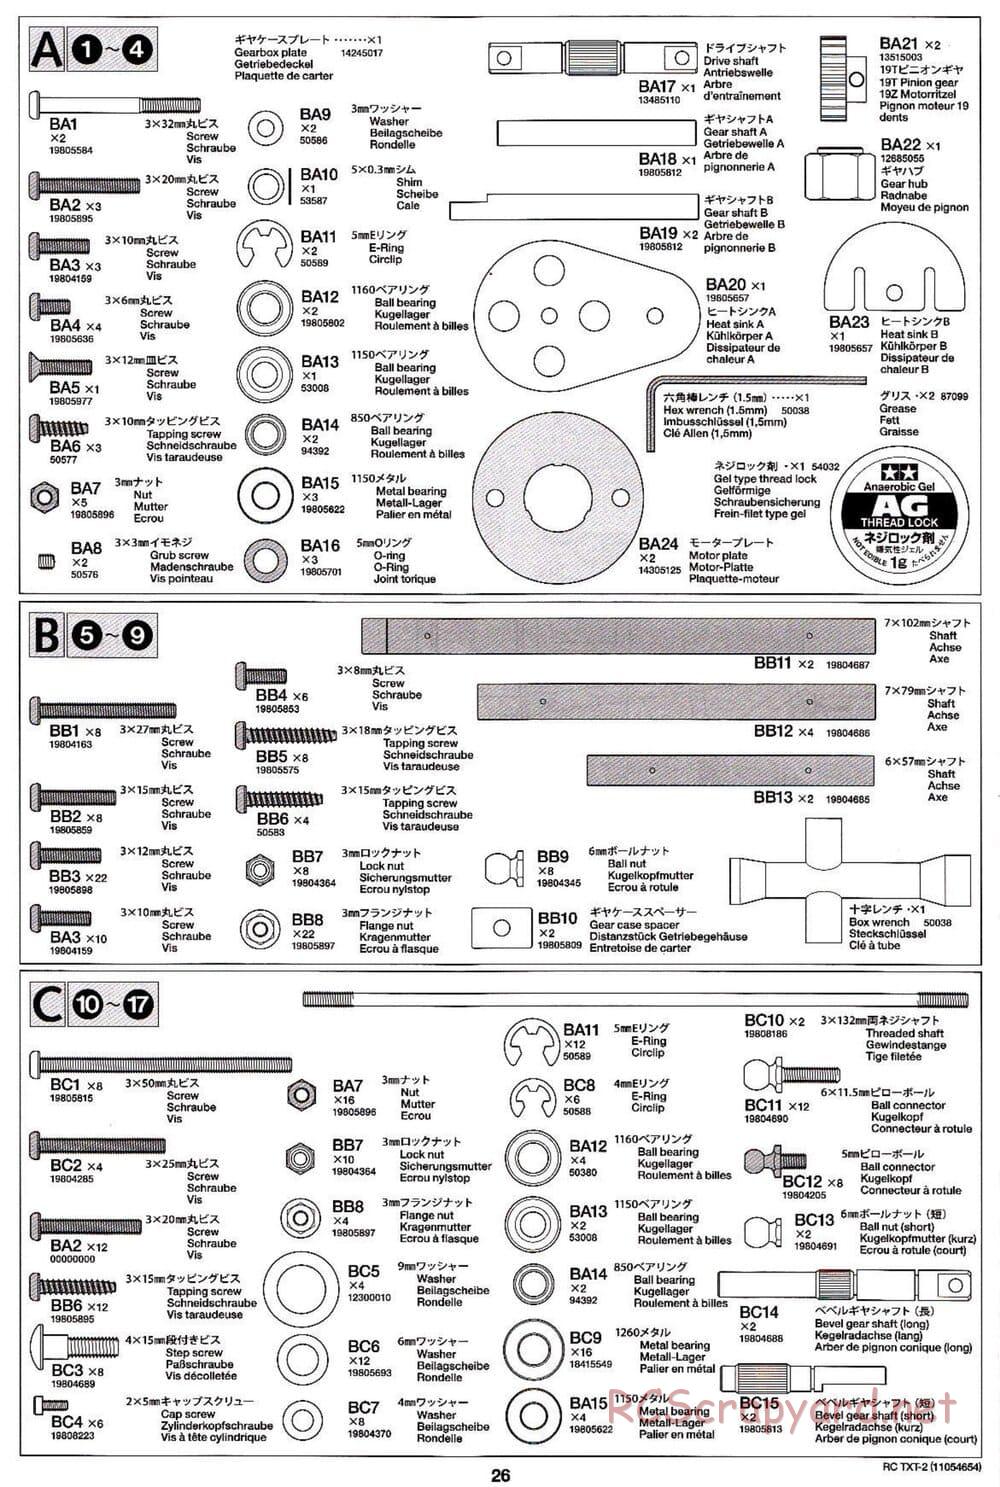 Tamiya - TXT-2 Chassis - Manual - Page 26